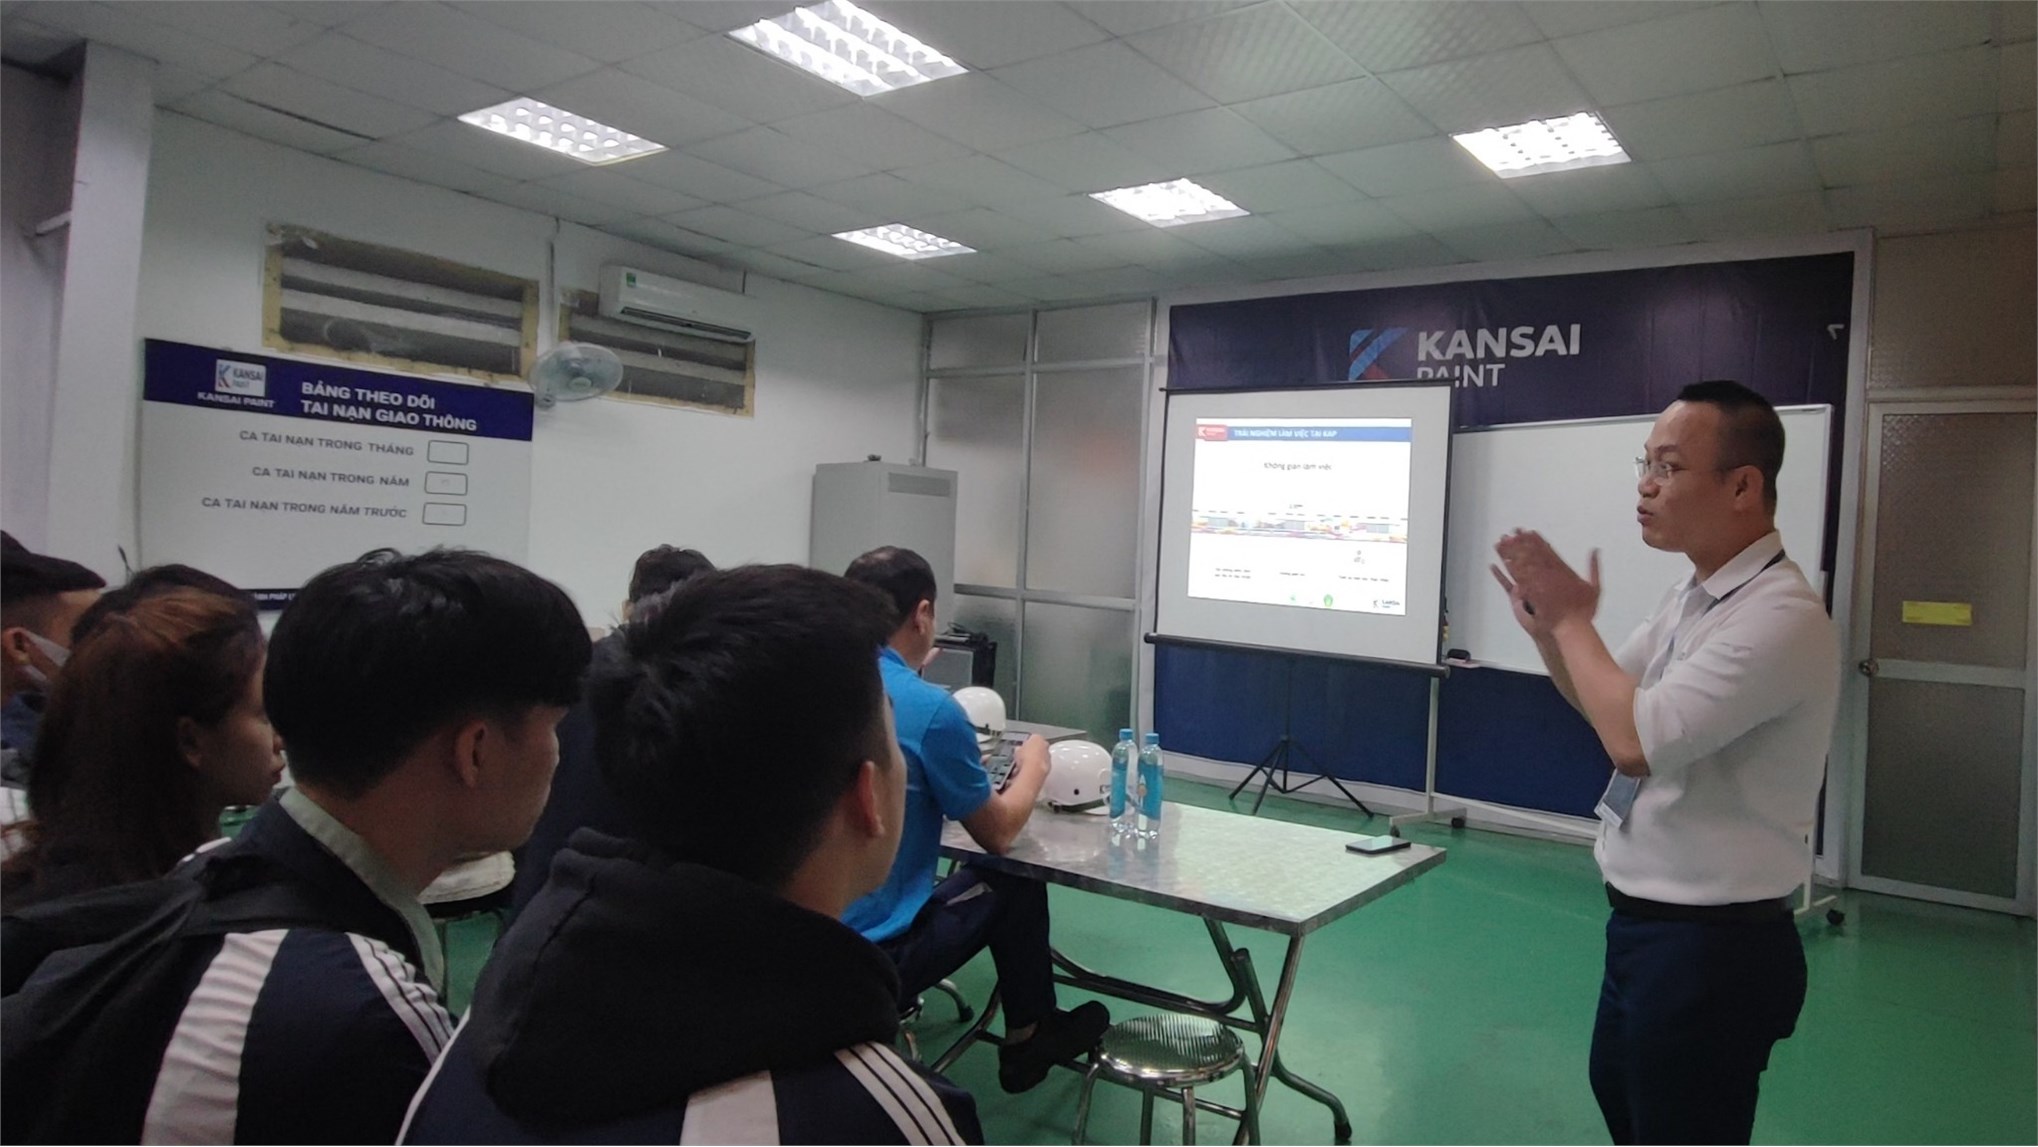 Sinh viên Khoa Công nghệ Hóa – Trường Đại học Công nghiệp Hà Nội tham quan Công ty TNHH Sơn Kansai - Việt Nam